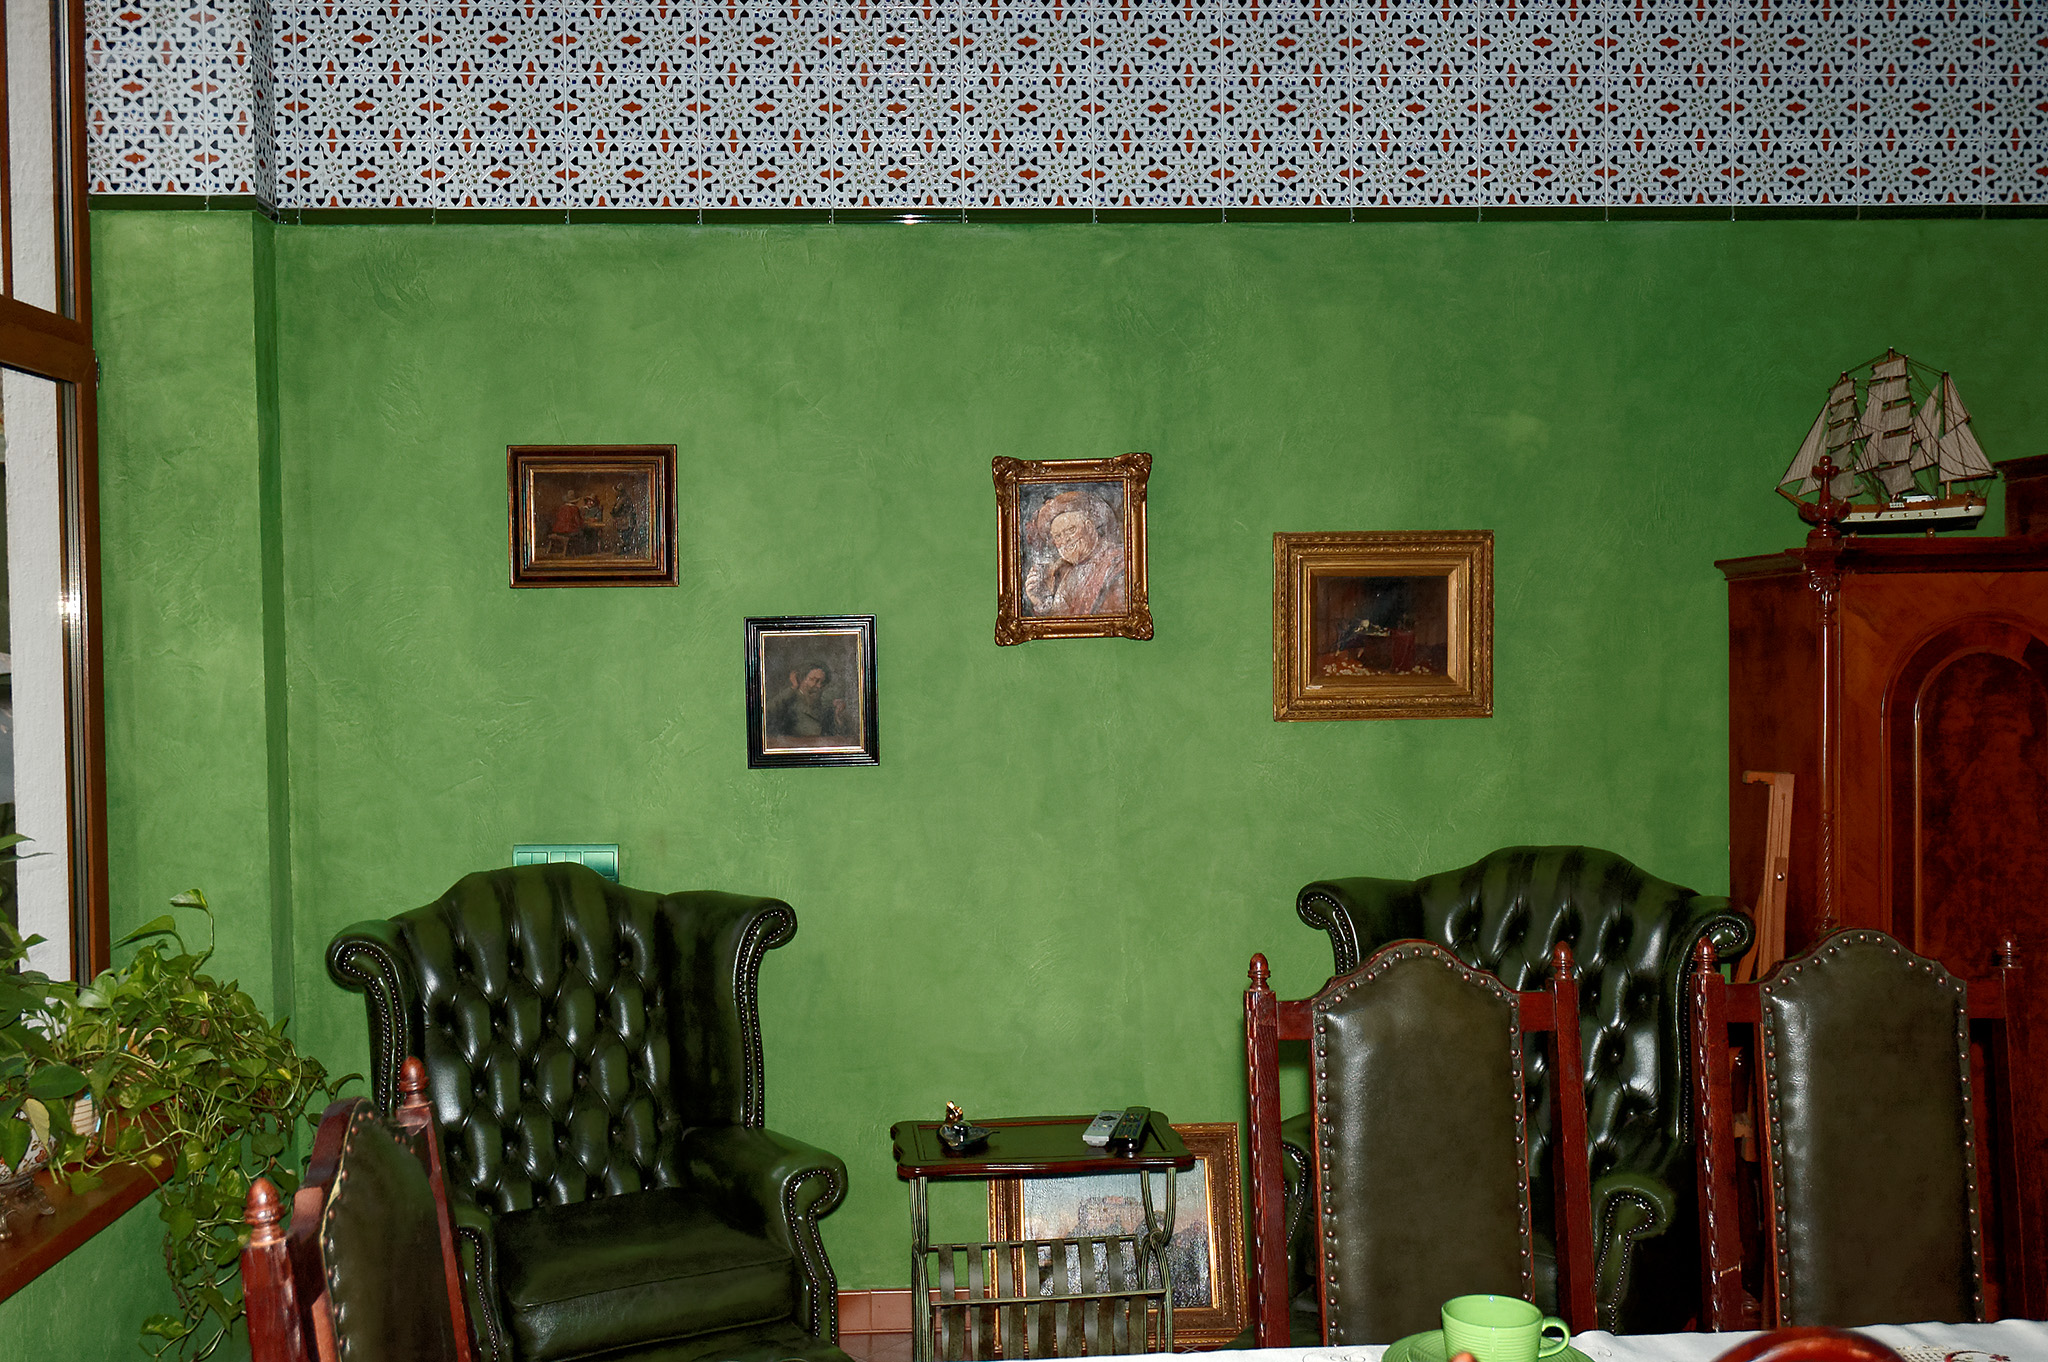 Покрытие стен из зелёного декоративного покрытия и керамической плитки, традиционной для южных районов Испании.